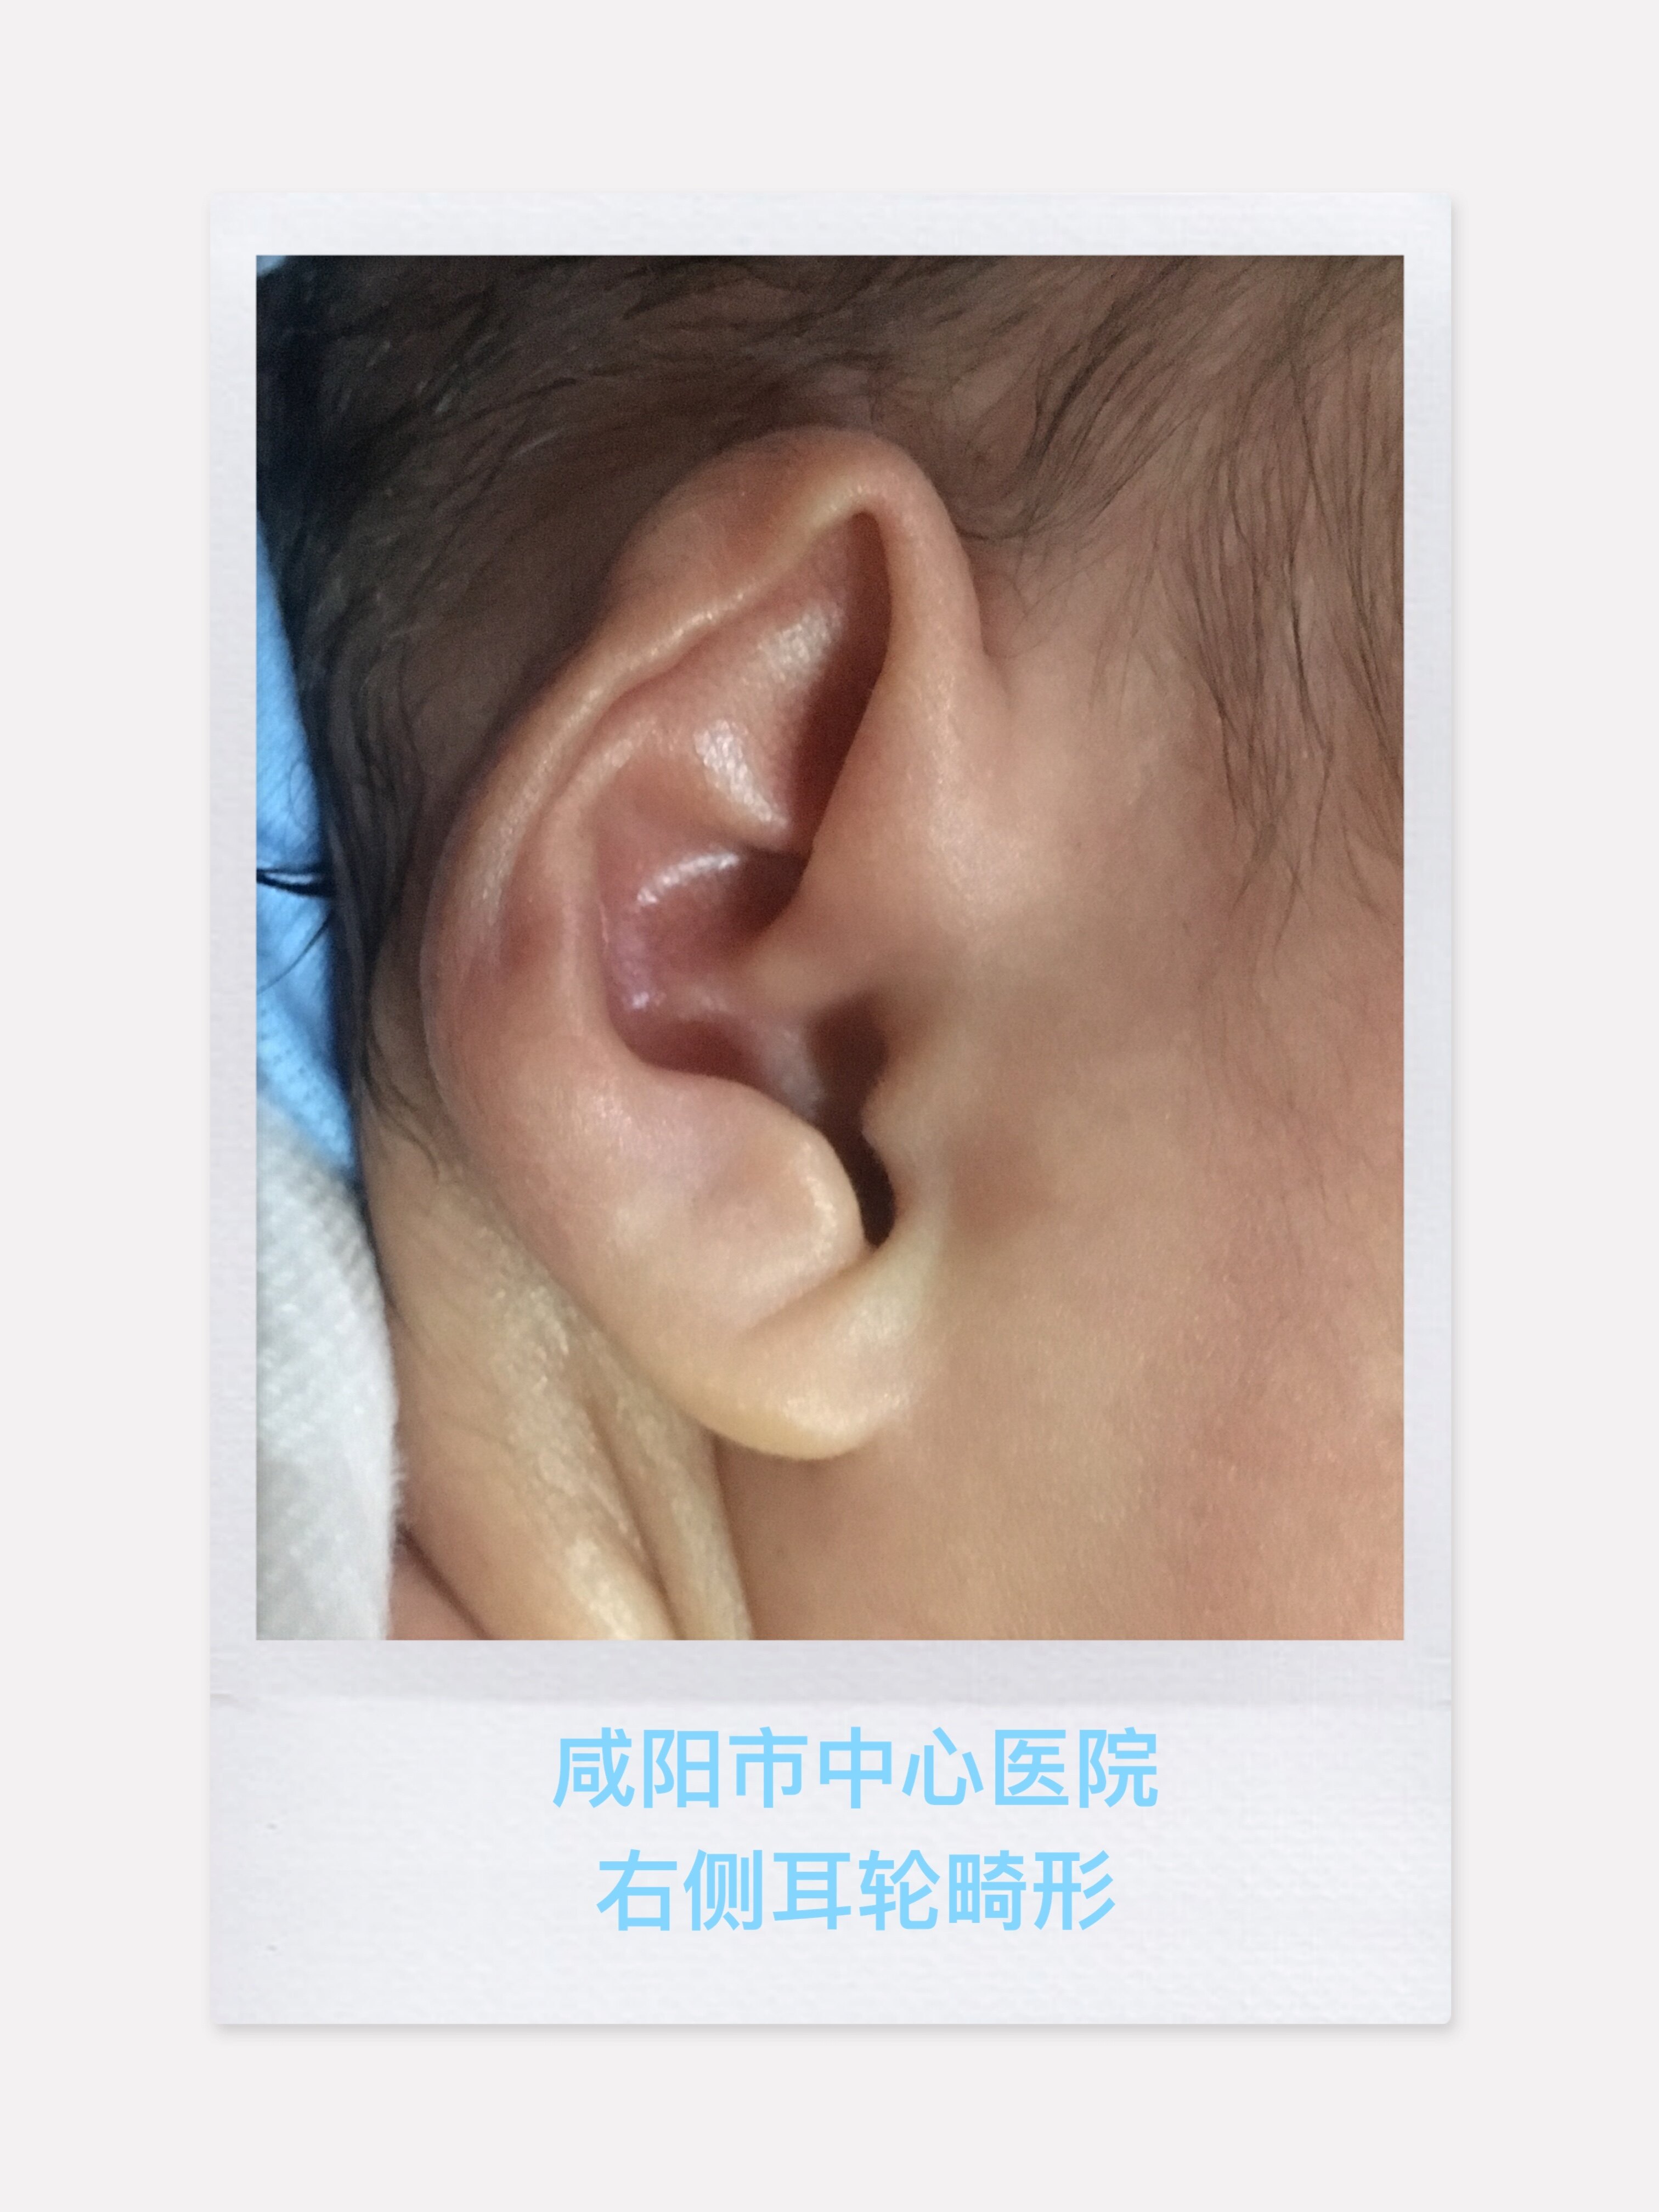 新生儿耳廓畸形科普(一)